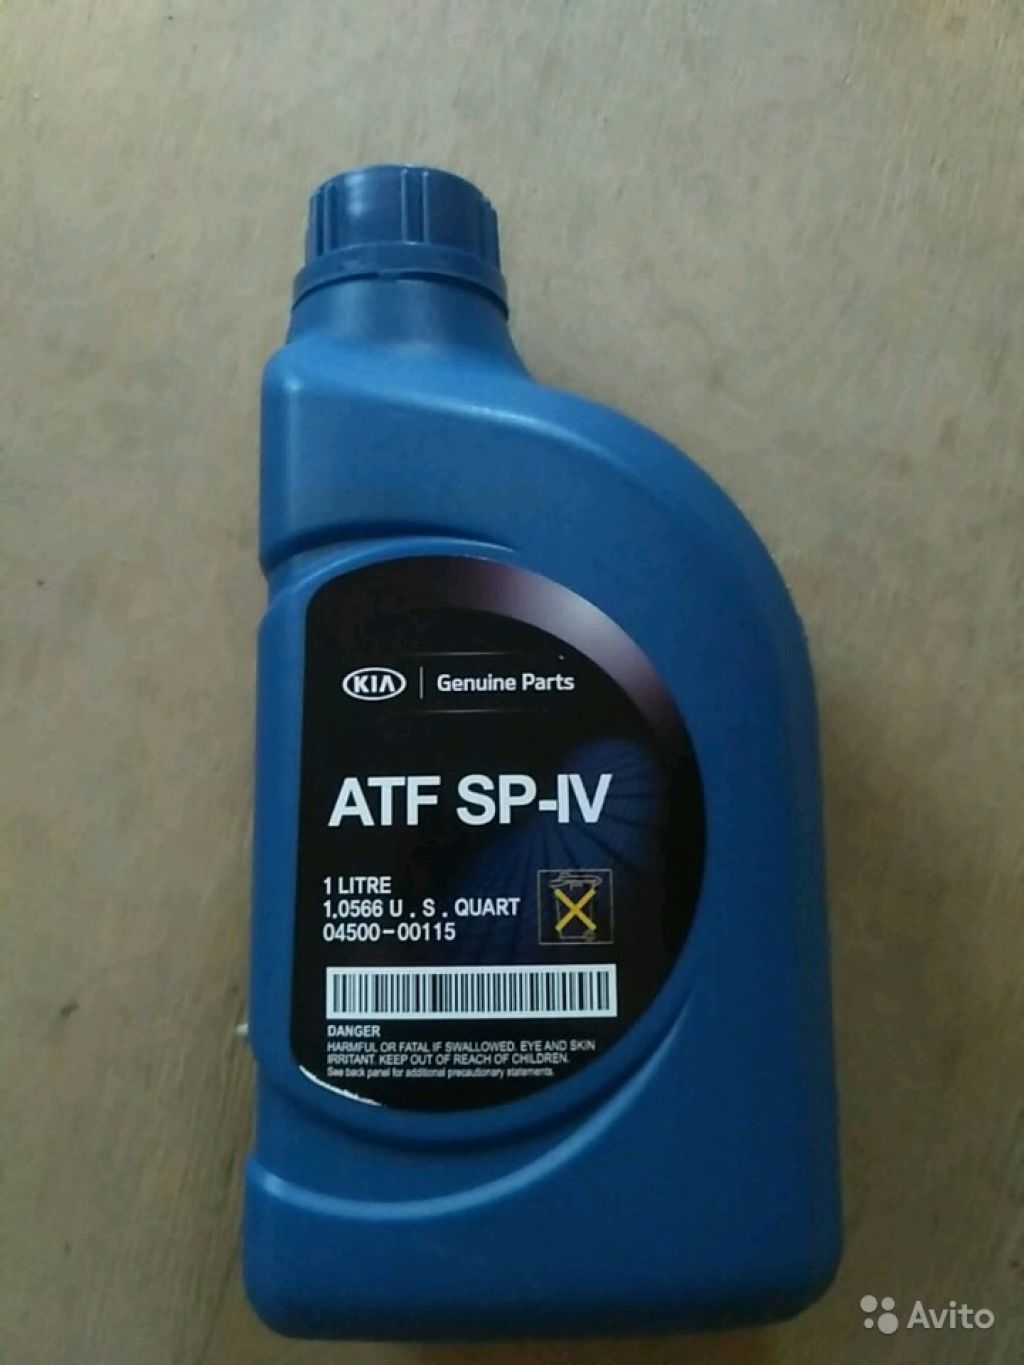 Atf 4 артикул. ATF sp4 Kia. Kia ATF SP-IV. ATF SP 4 Kia 4 литра. ATF SP-IV M-1.